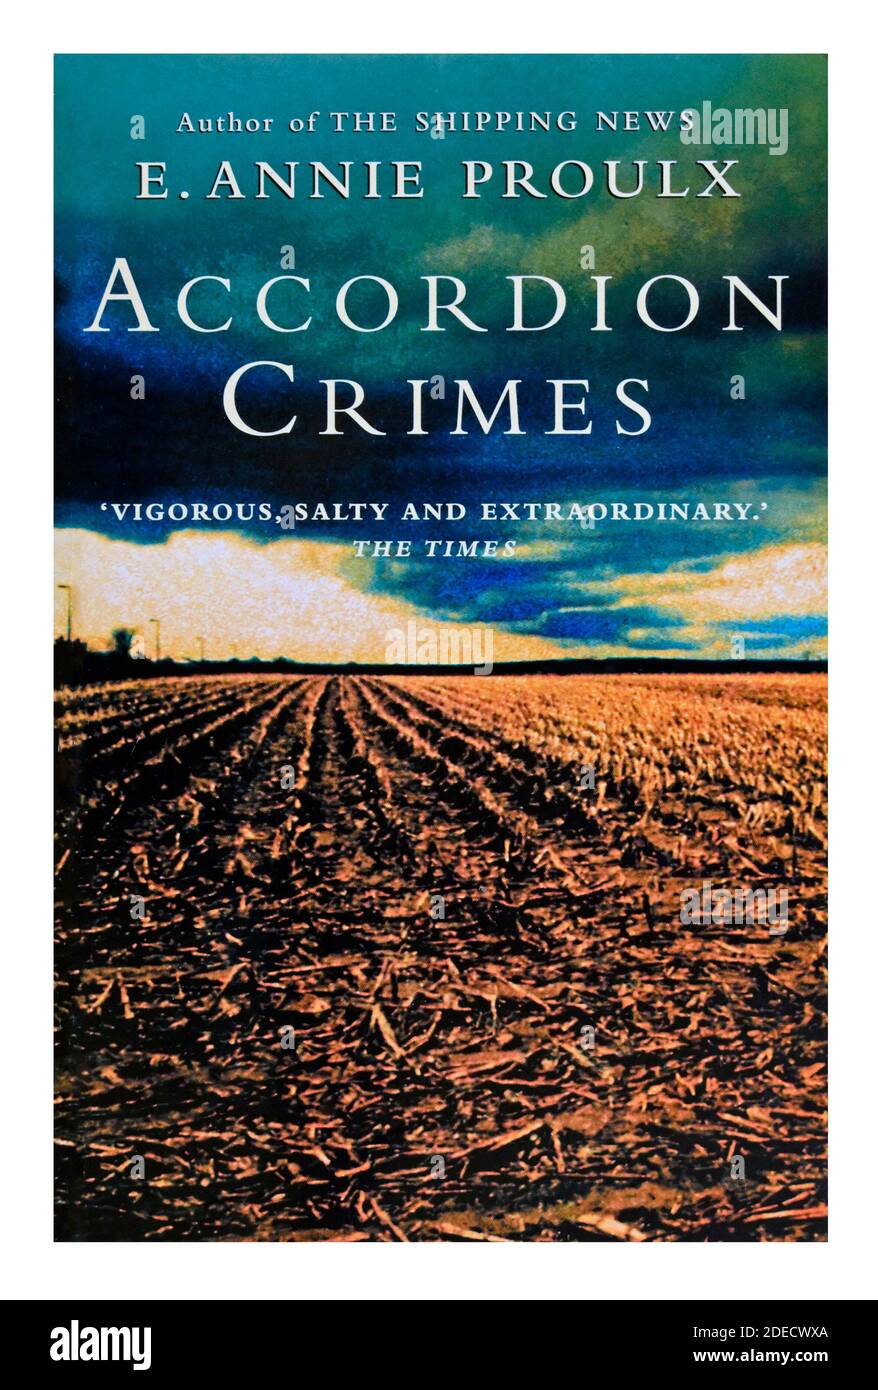 Couverture de livre « Accordéon crimes » par E.Annie Proulx. Banque D'Images